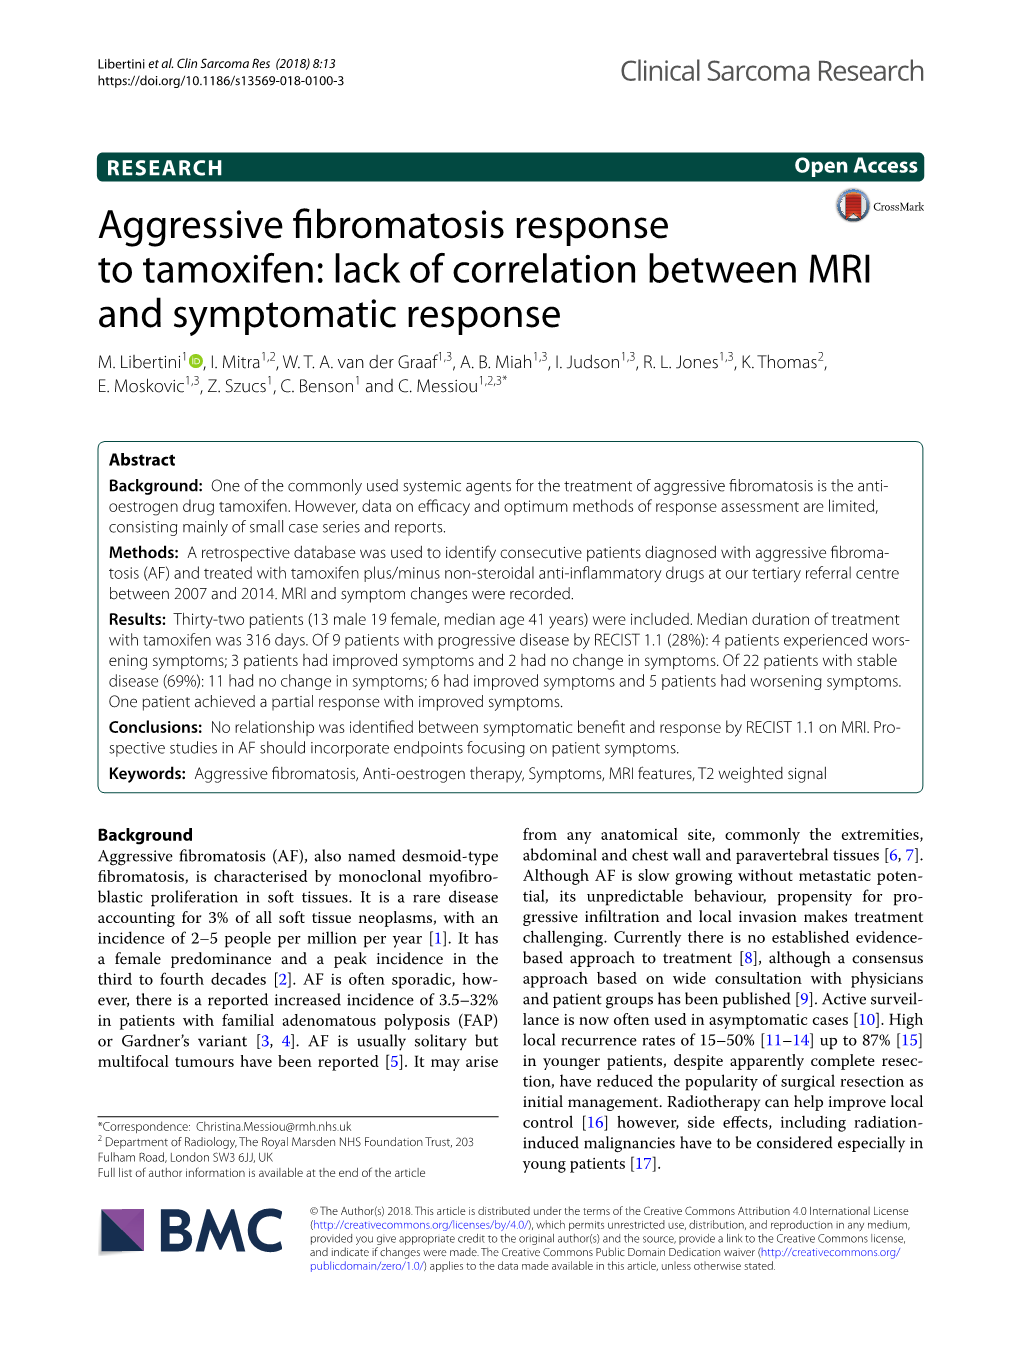 Aggressive Fibromatosis Response to Tamoxifen